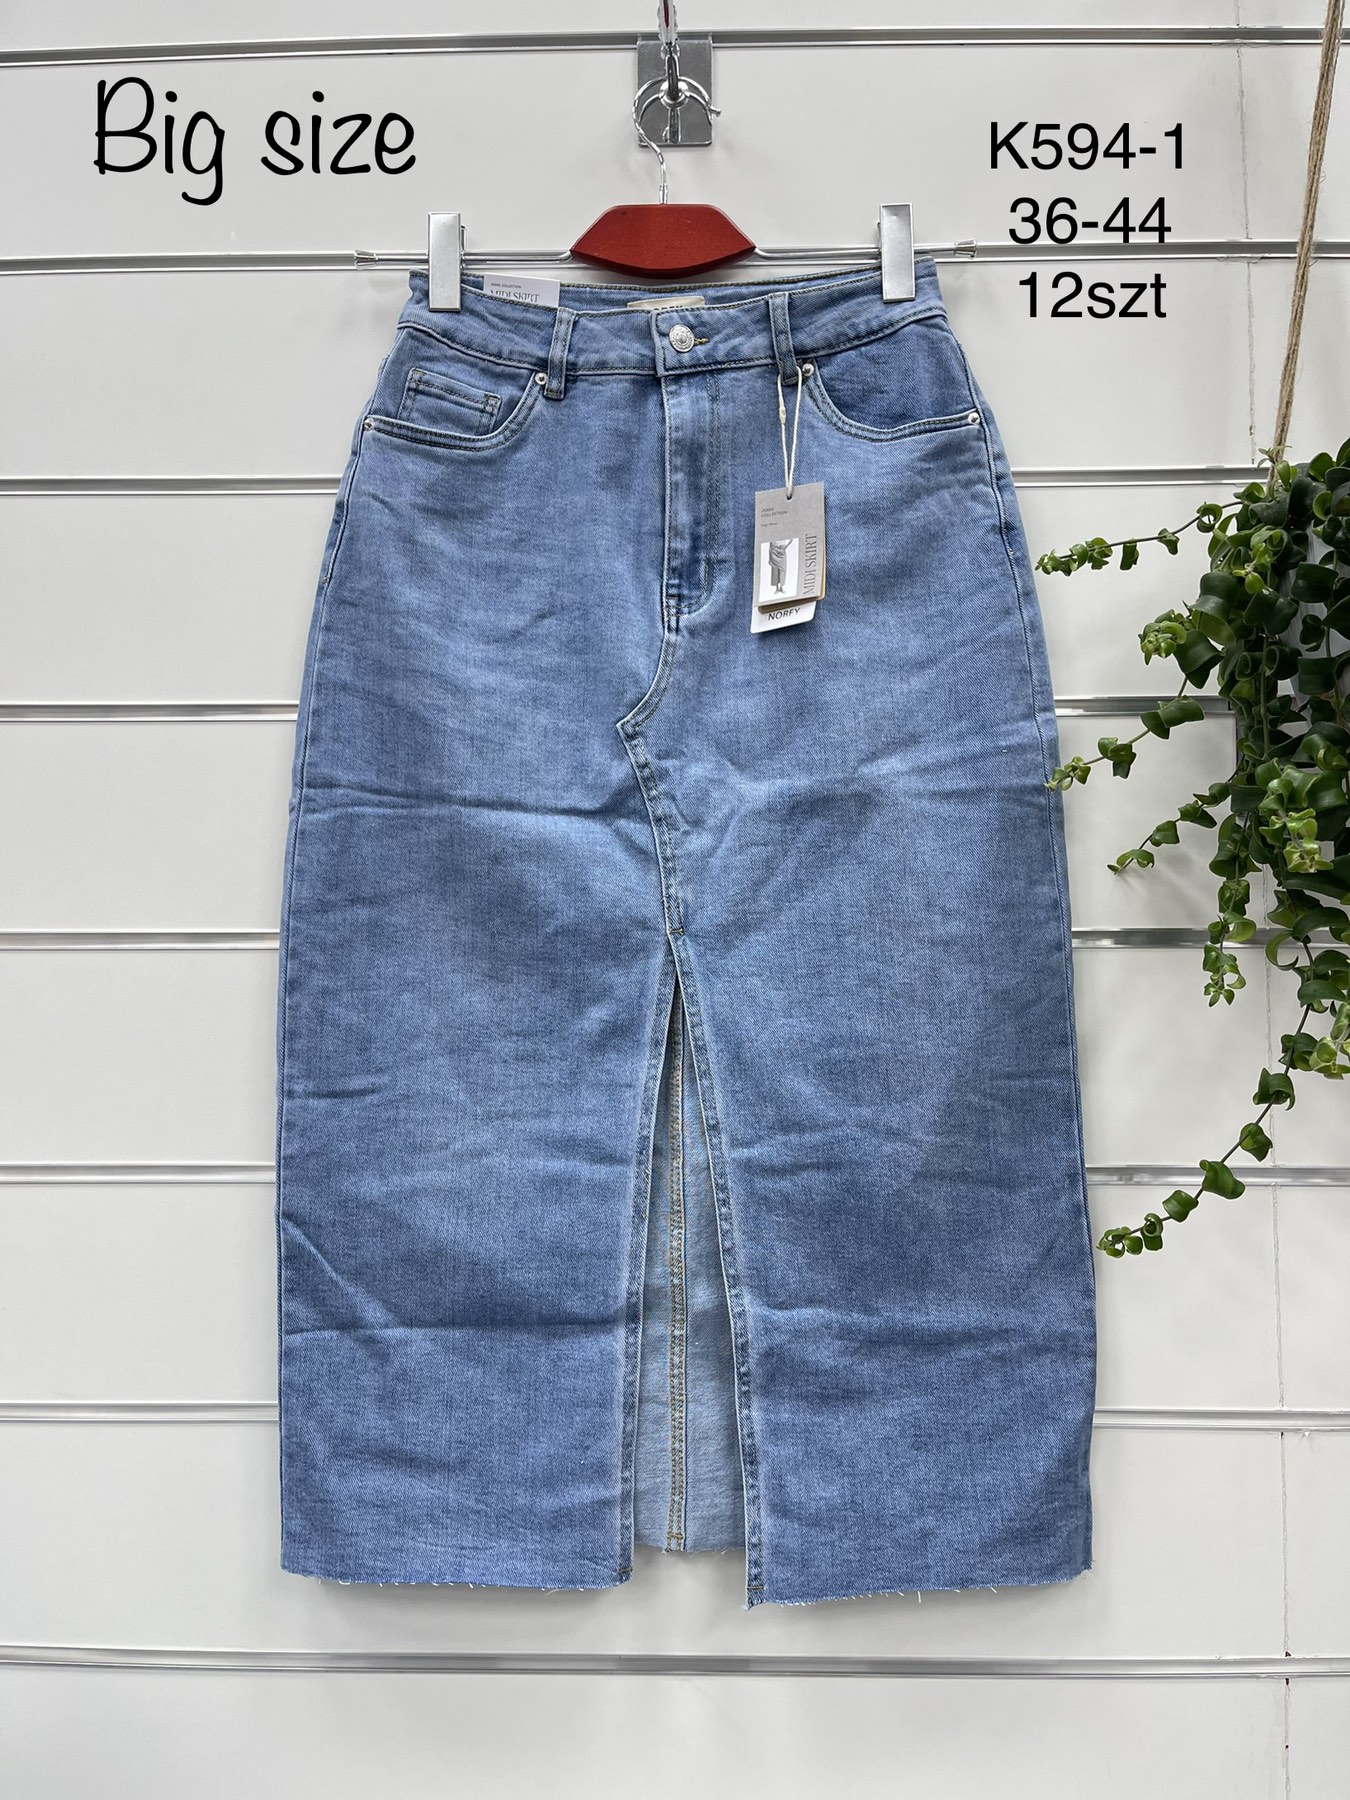 Spódnica  damskie jeans   Roz  36-44  1 kolor . Paczka 12szt